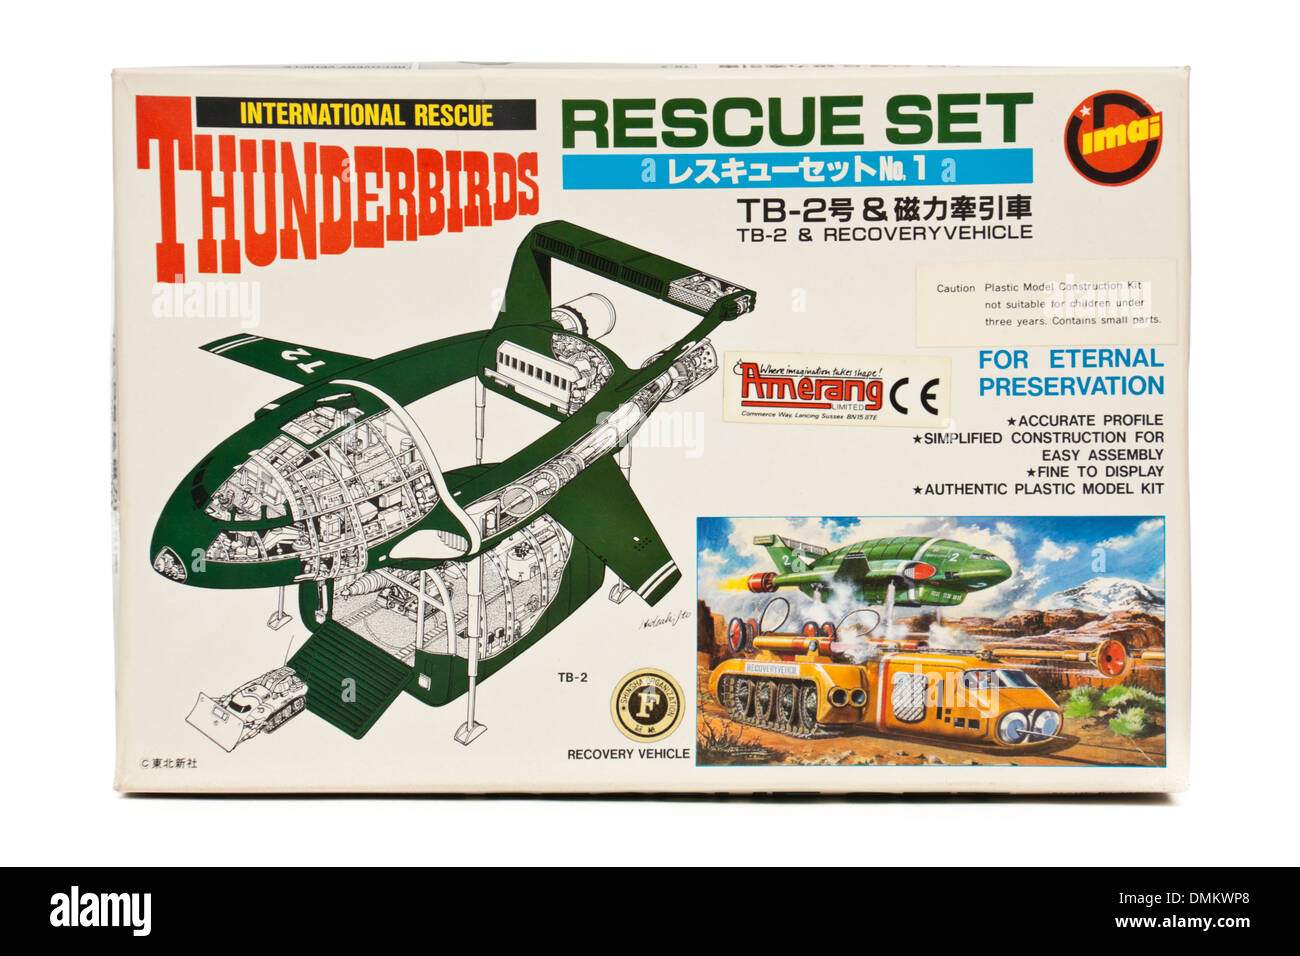 'Thunderbirds TB-2 et de récupération des véhicules modèle plastique construction kit par IMAI du Japon, basée sur la célèbre série TV des années 60 Banque D'Images